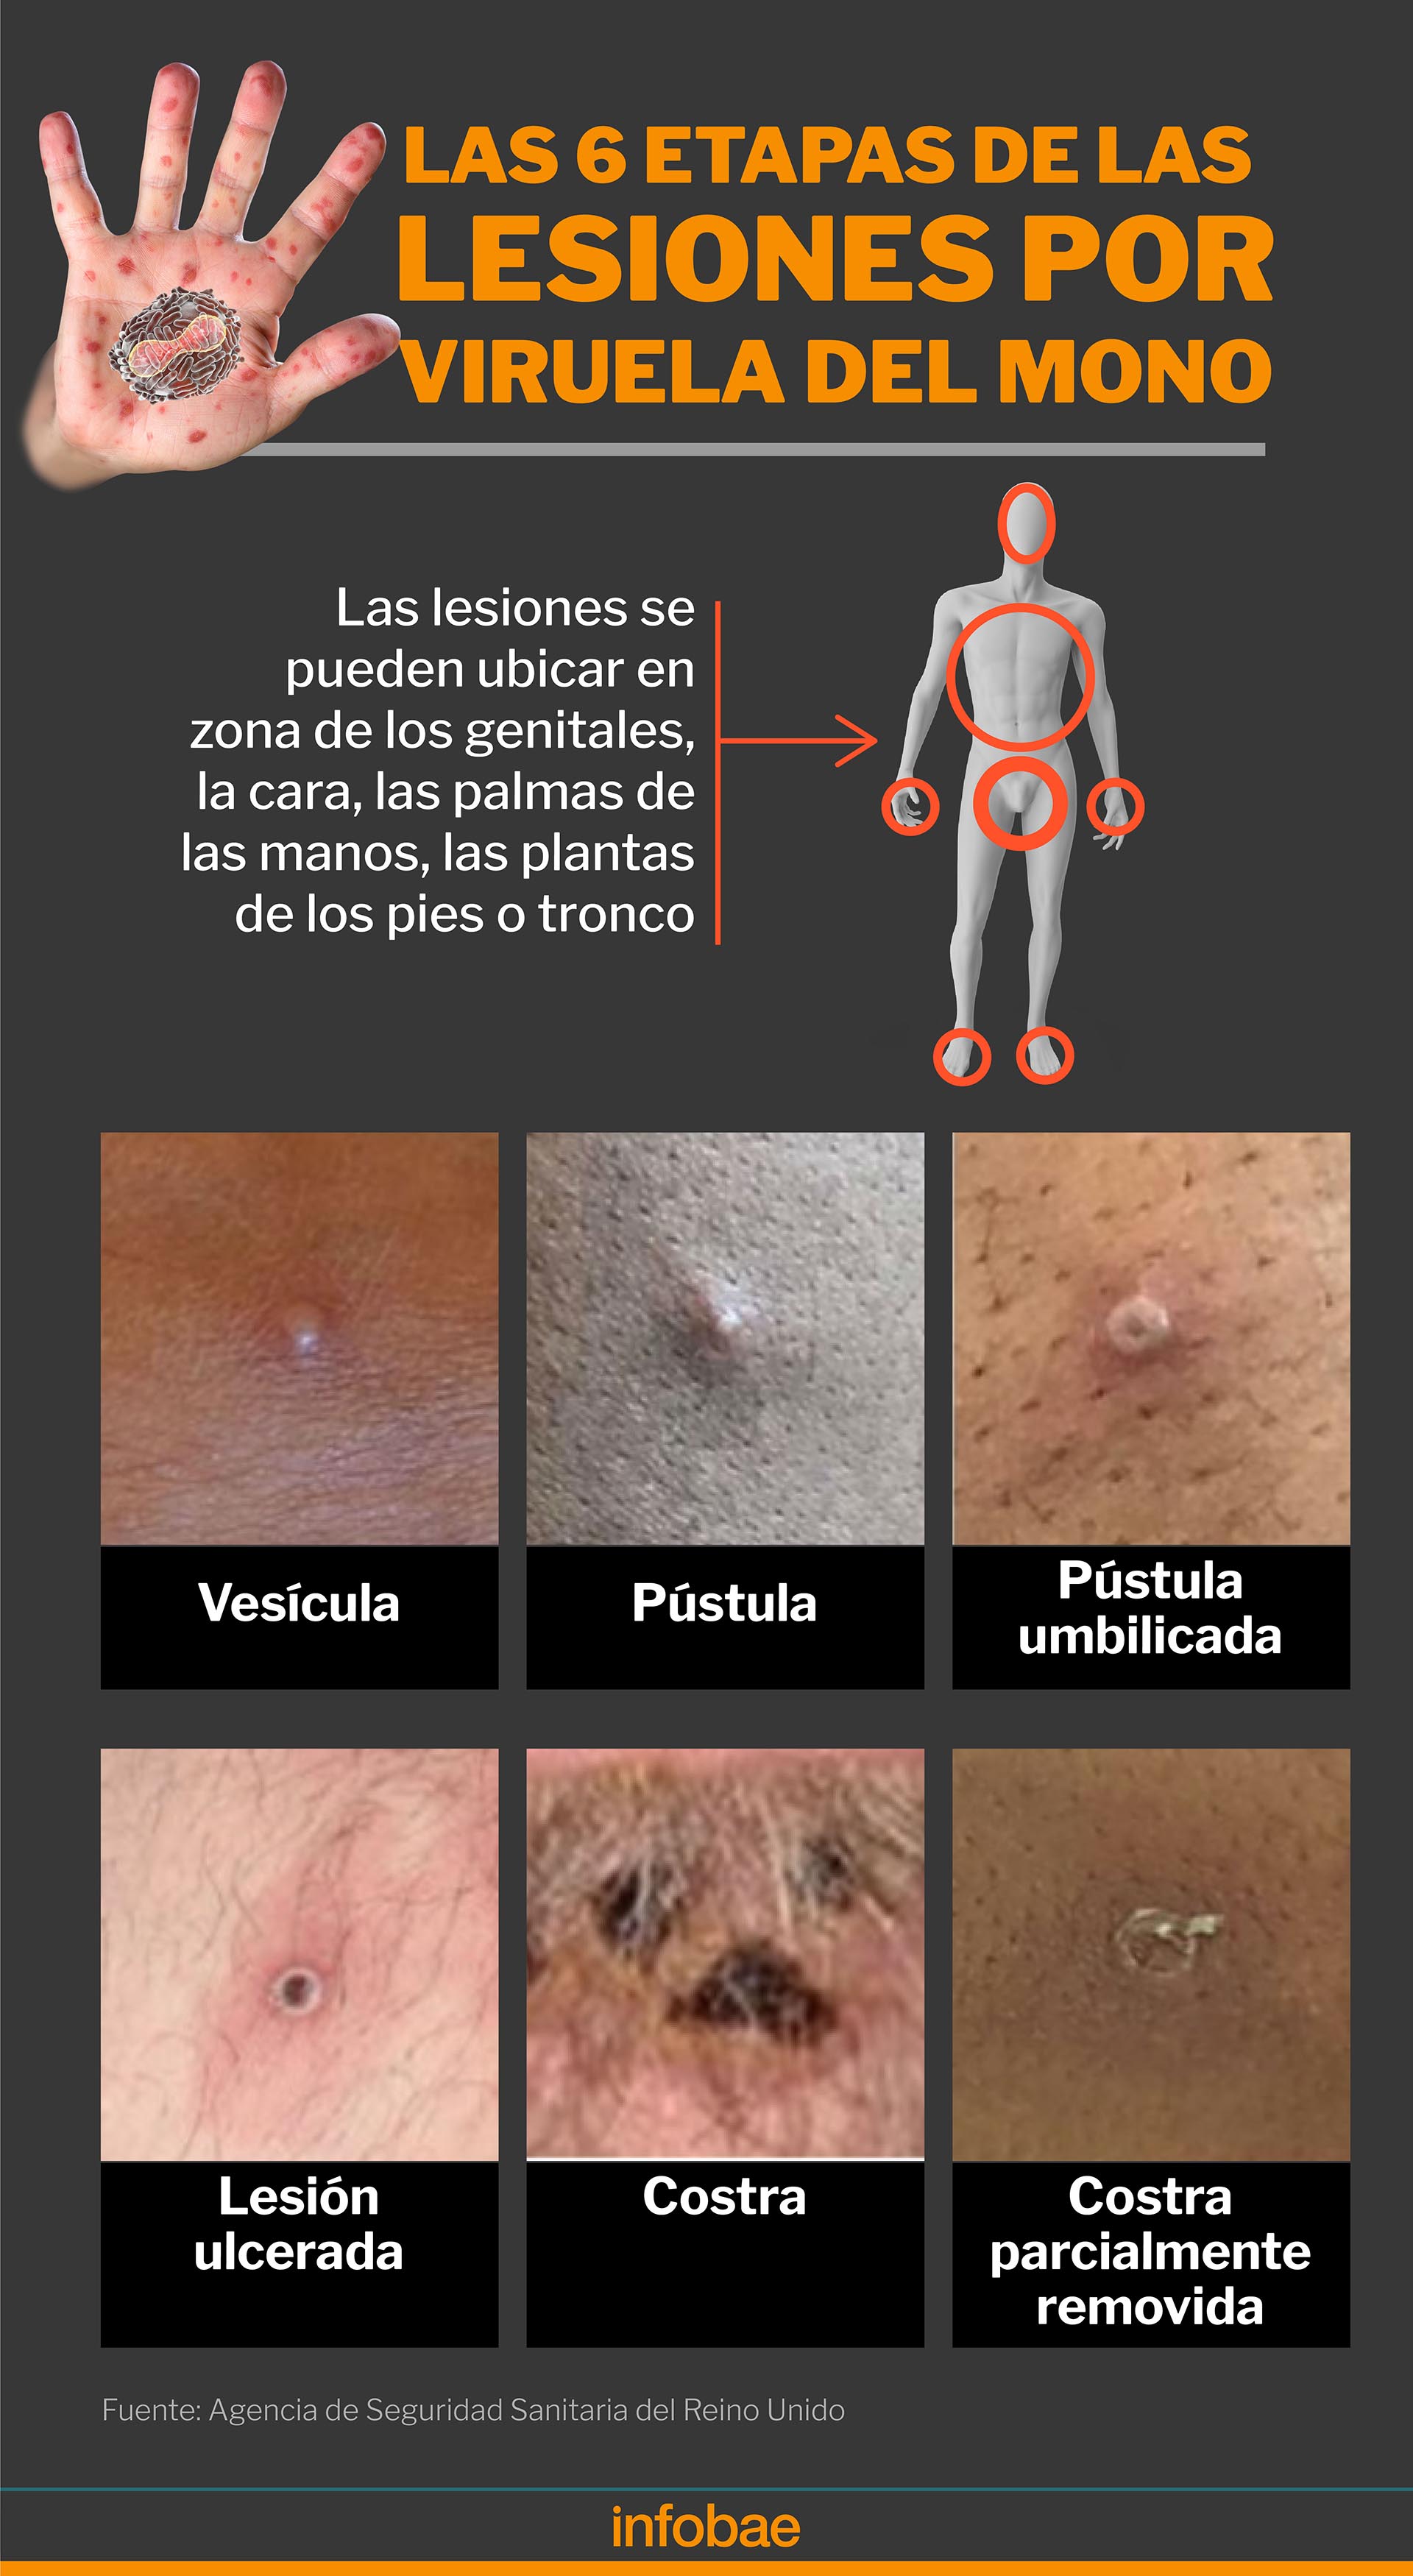 Síntomas de la viruela del mono, cómo se contagia y casos del monkeypox en España